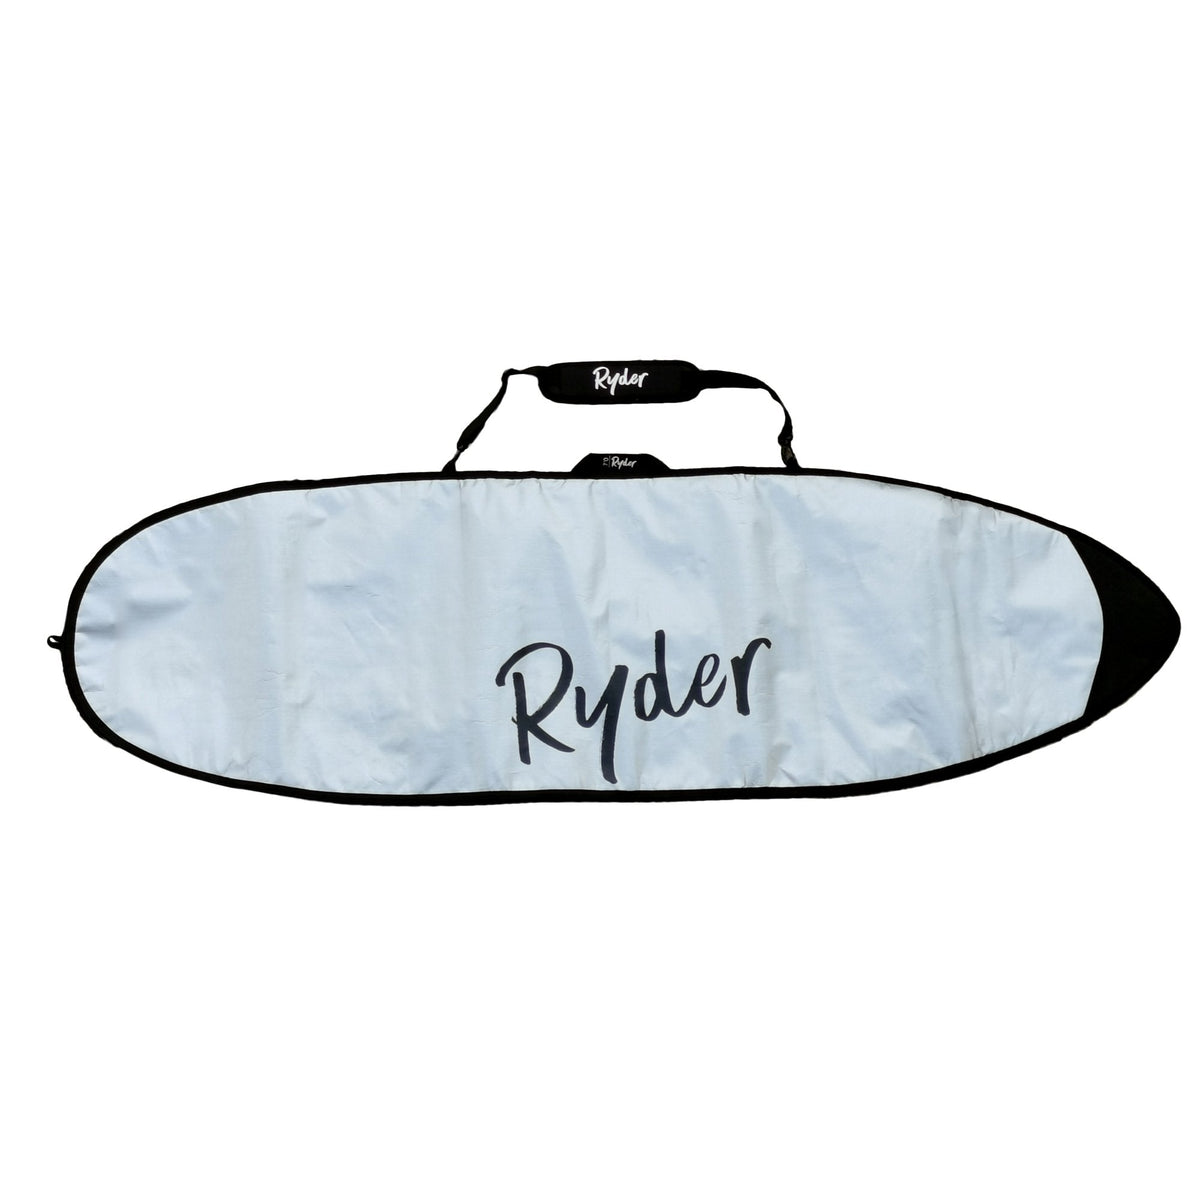 Ryder Surfboard Cover - 7ft - Ryder Boards